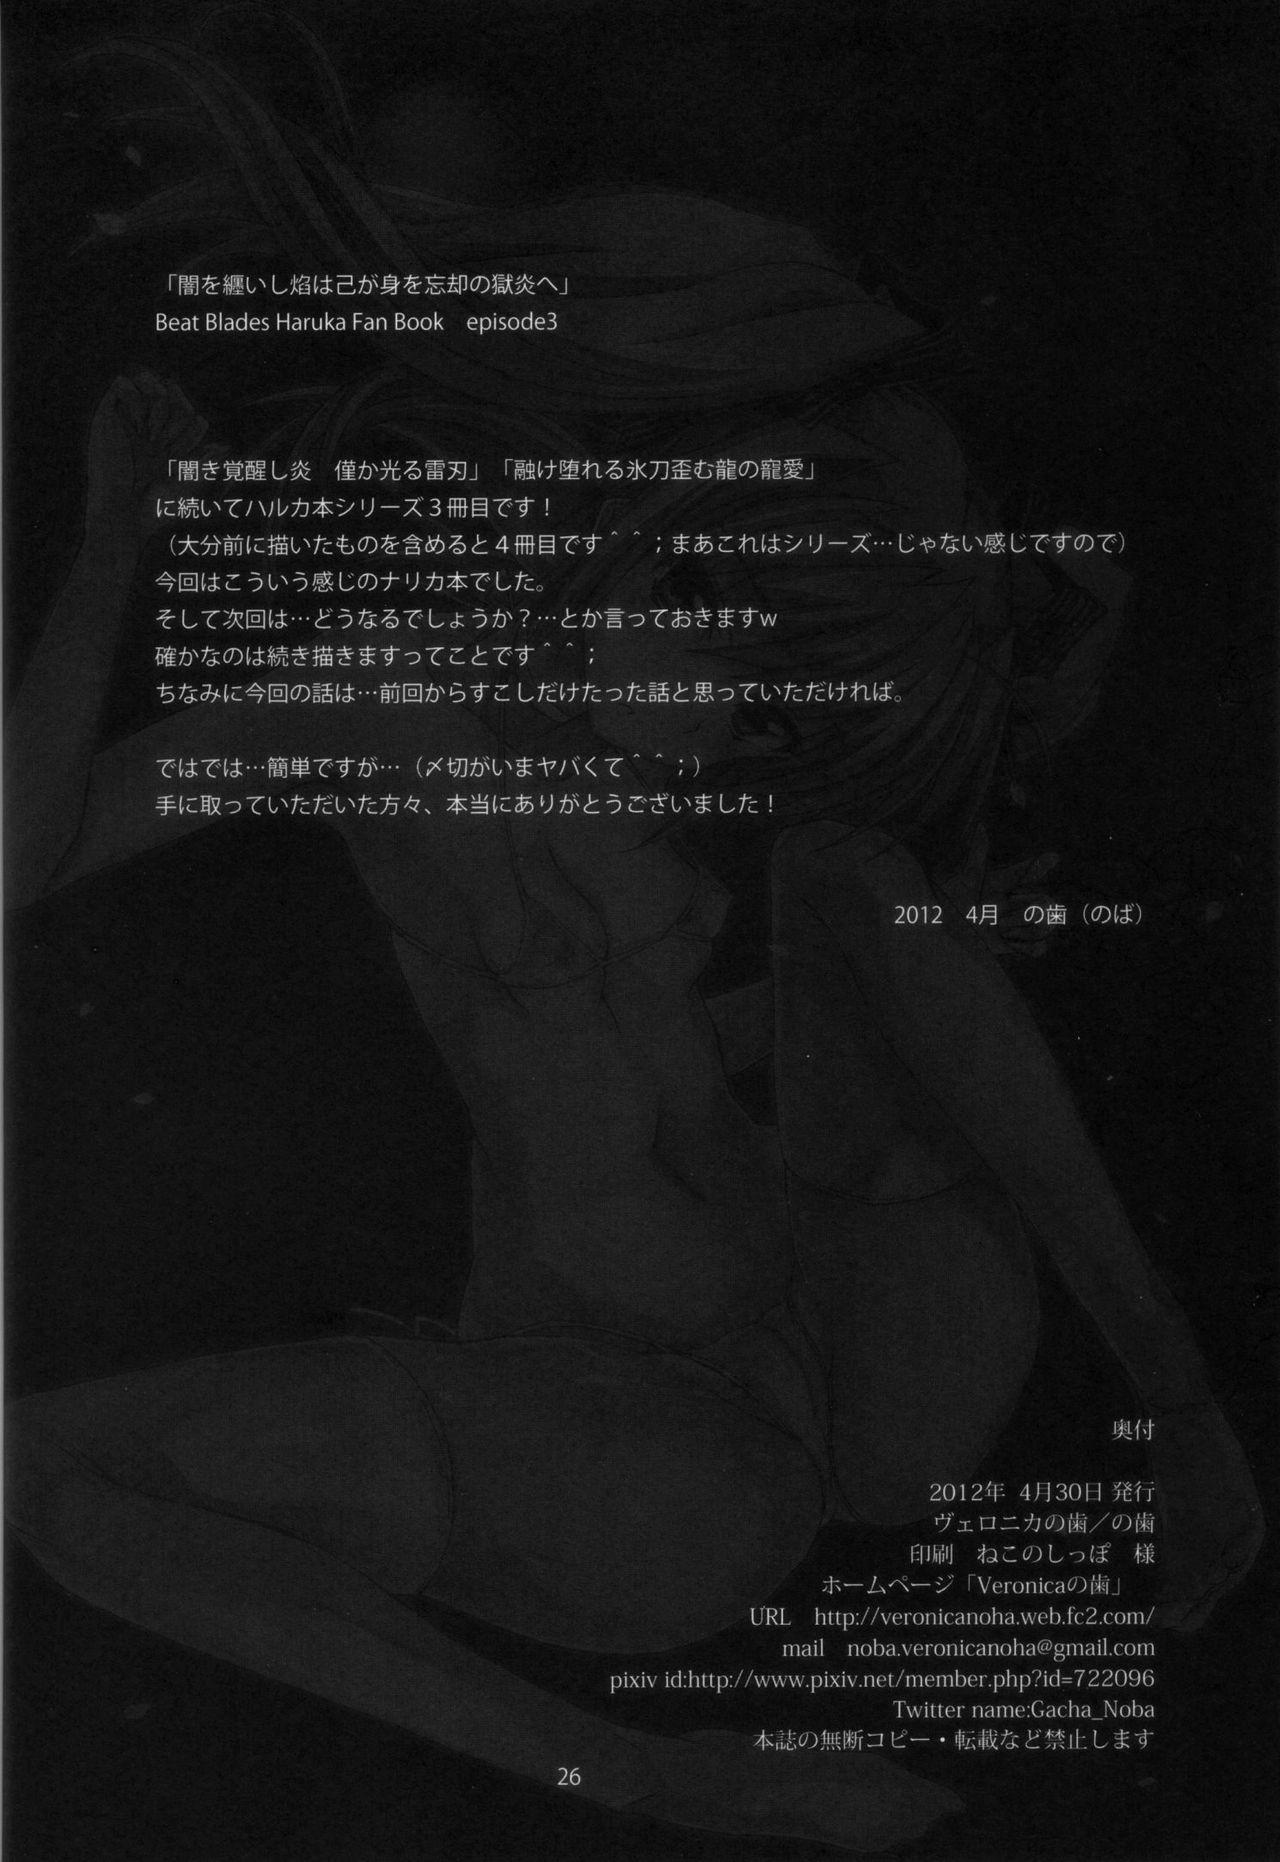 Nut Yami wo Matoishi Homura wa Ono ga Mi wo Boukyaku no Gokuen e - Beat blades haruka Putinha - Page 25